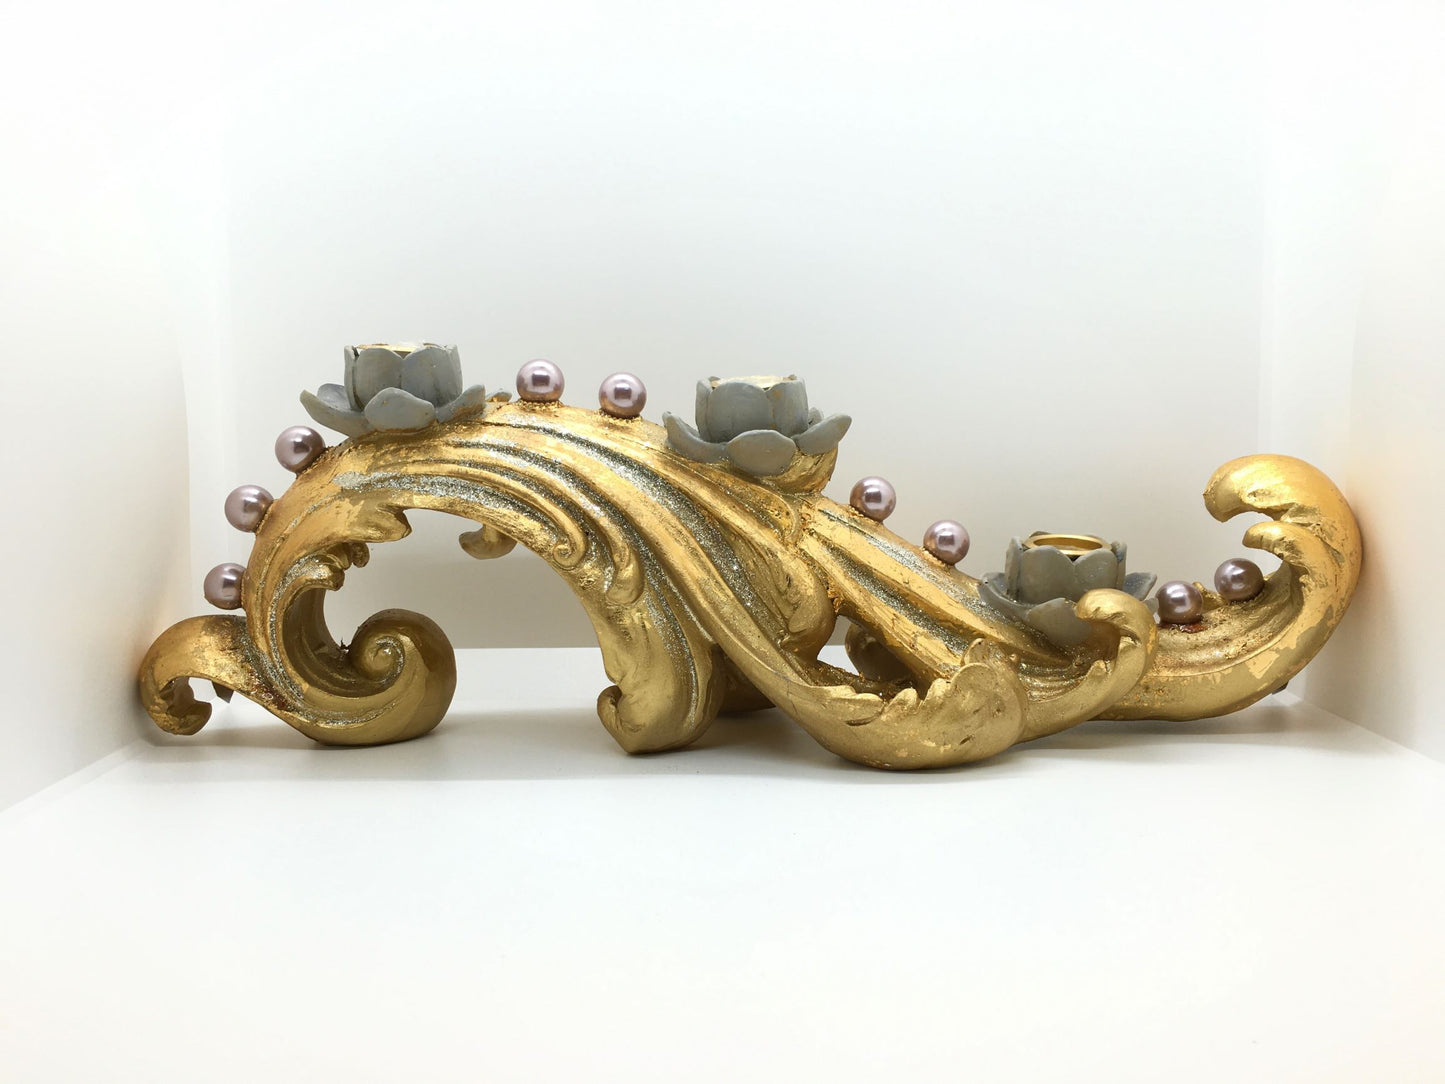 Portacandele in resina decorata con colori oro, grigio e glitter argentato. Dimensioni: cm 40 x 13 x 14 h